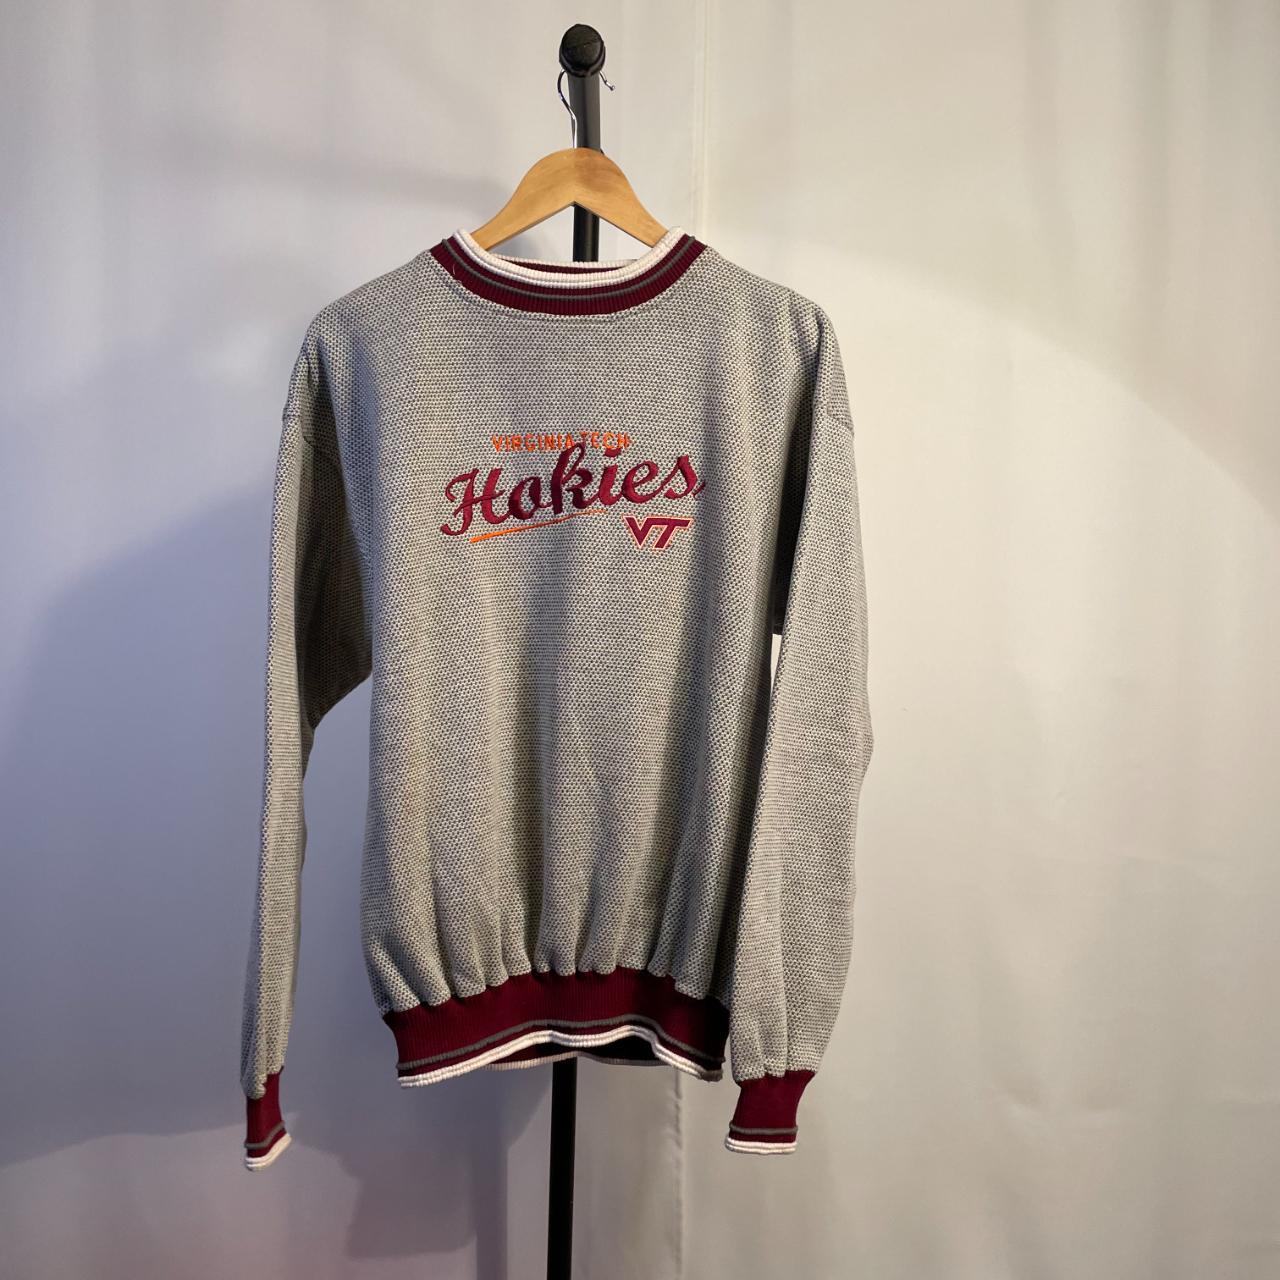 Vintage Virginia Tech Hokies Textured Sweatshirt... - Depop